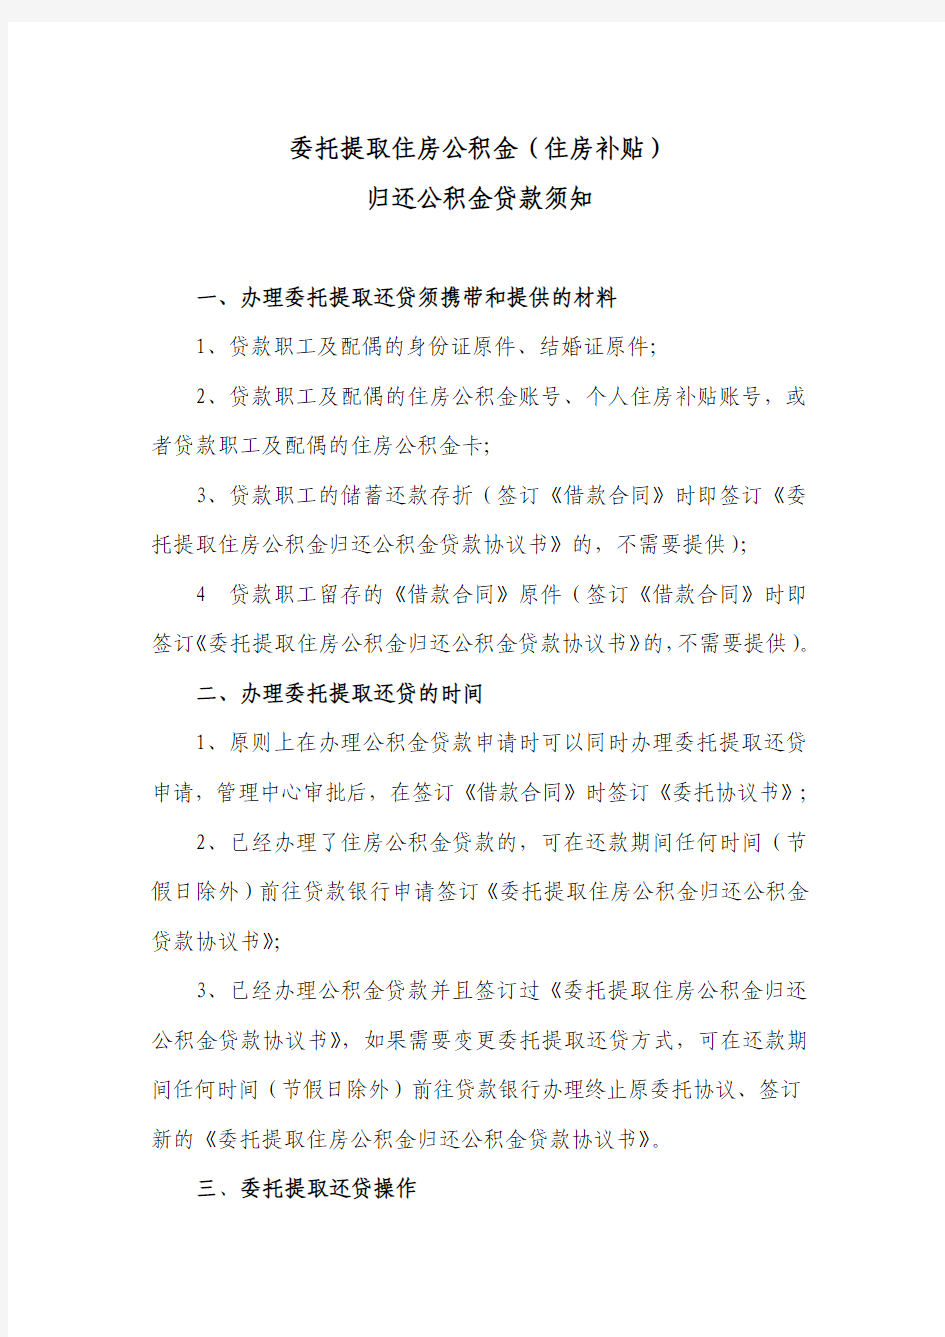 南京市委托提取住房公积金(住房补贴)归还公积金贷款须知